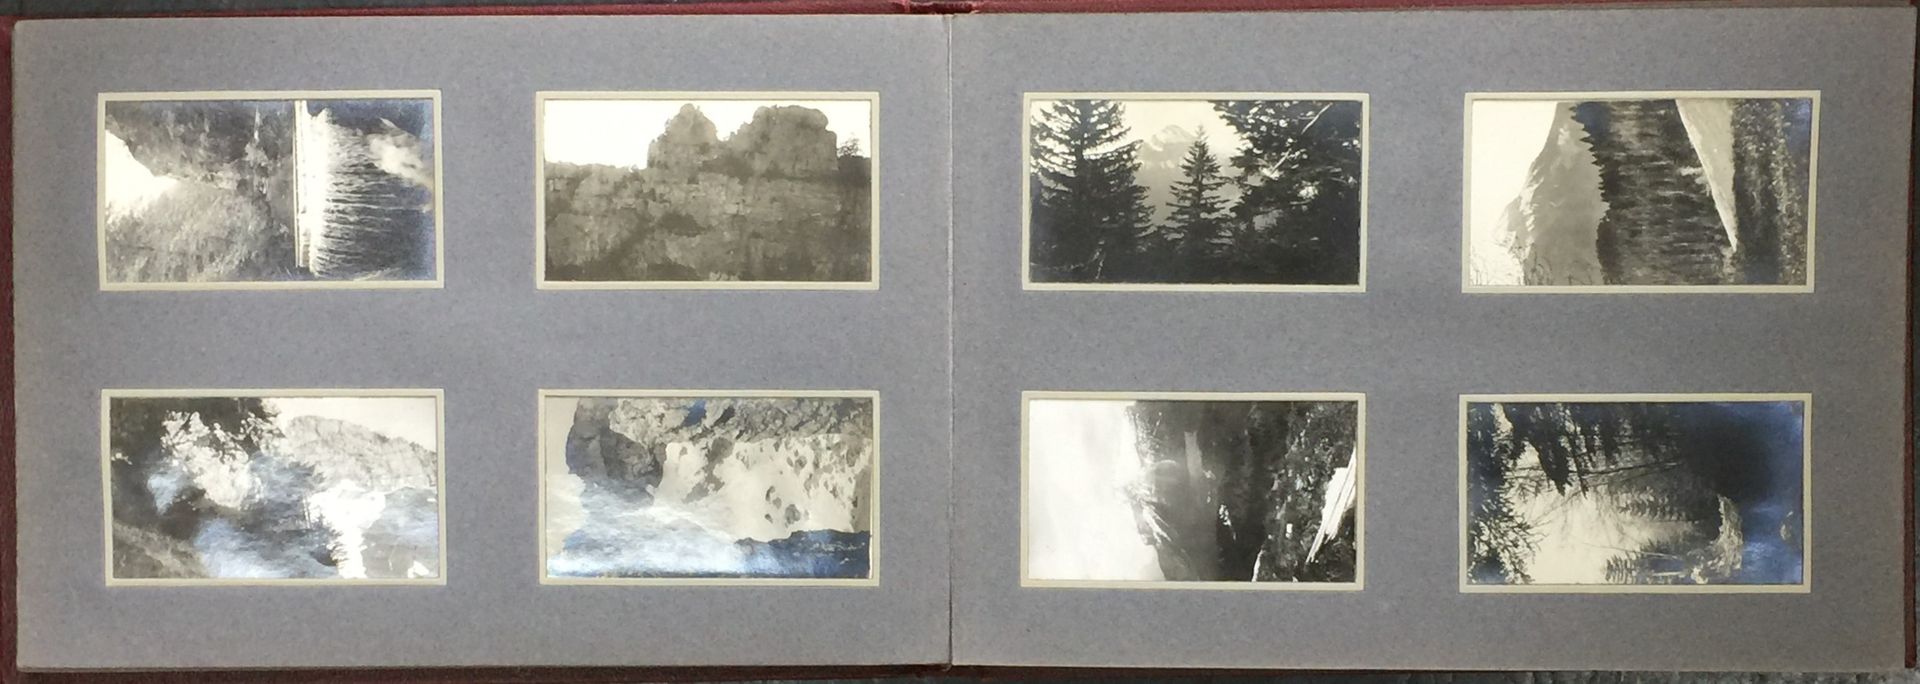 Null Album di fotografie amatoriali sul tema della montagna